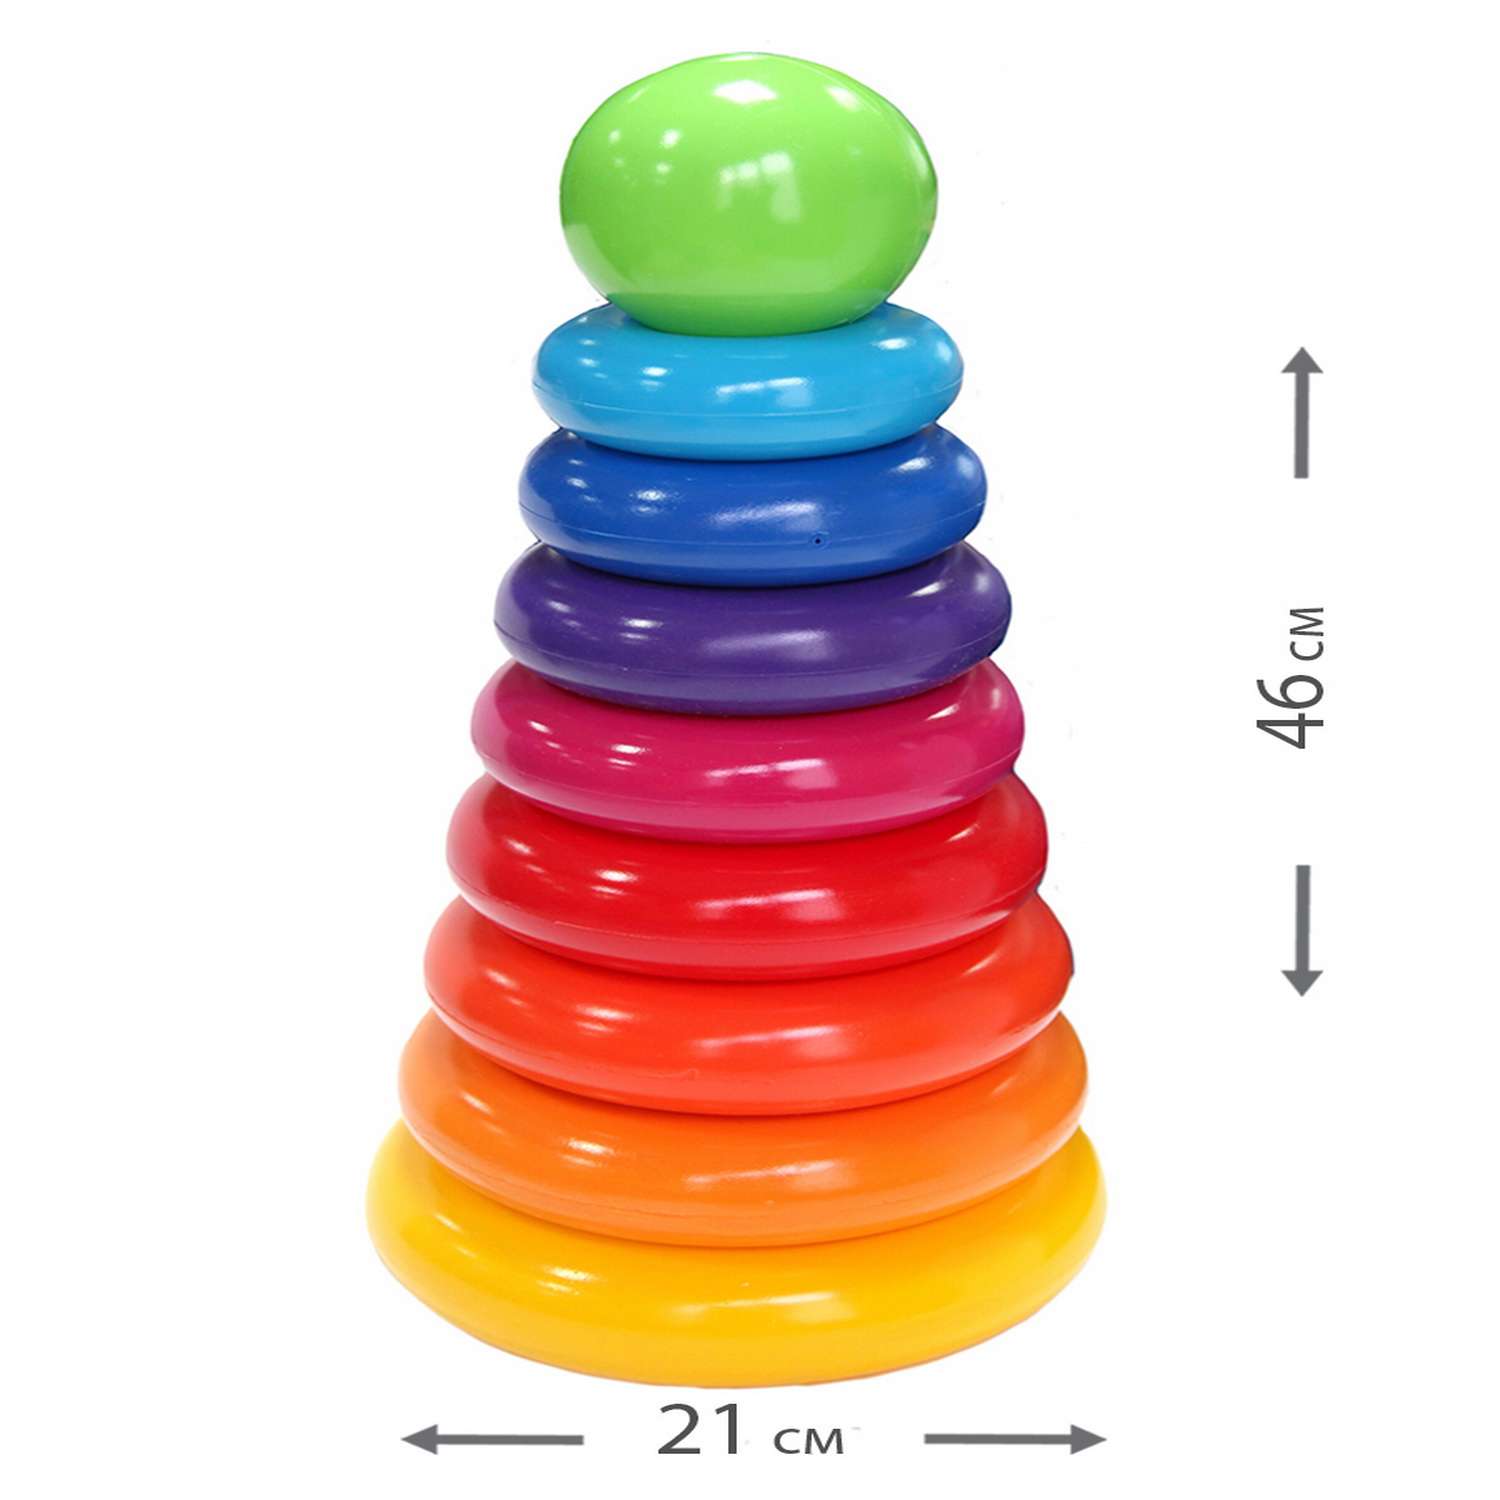 Пирамидка детская Green Plast Гигант 8 колец высота 46.4см развивающая игрушка - фото 2